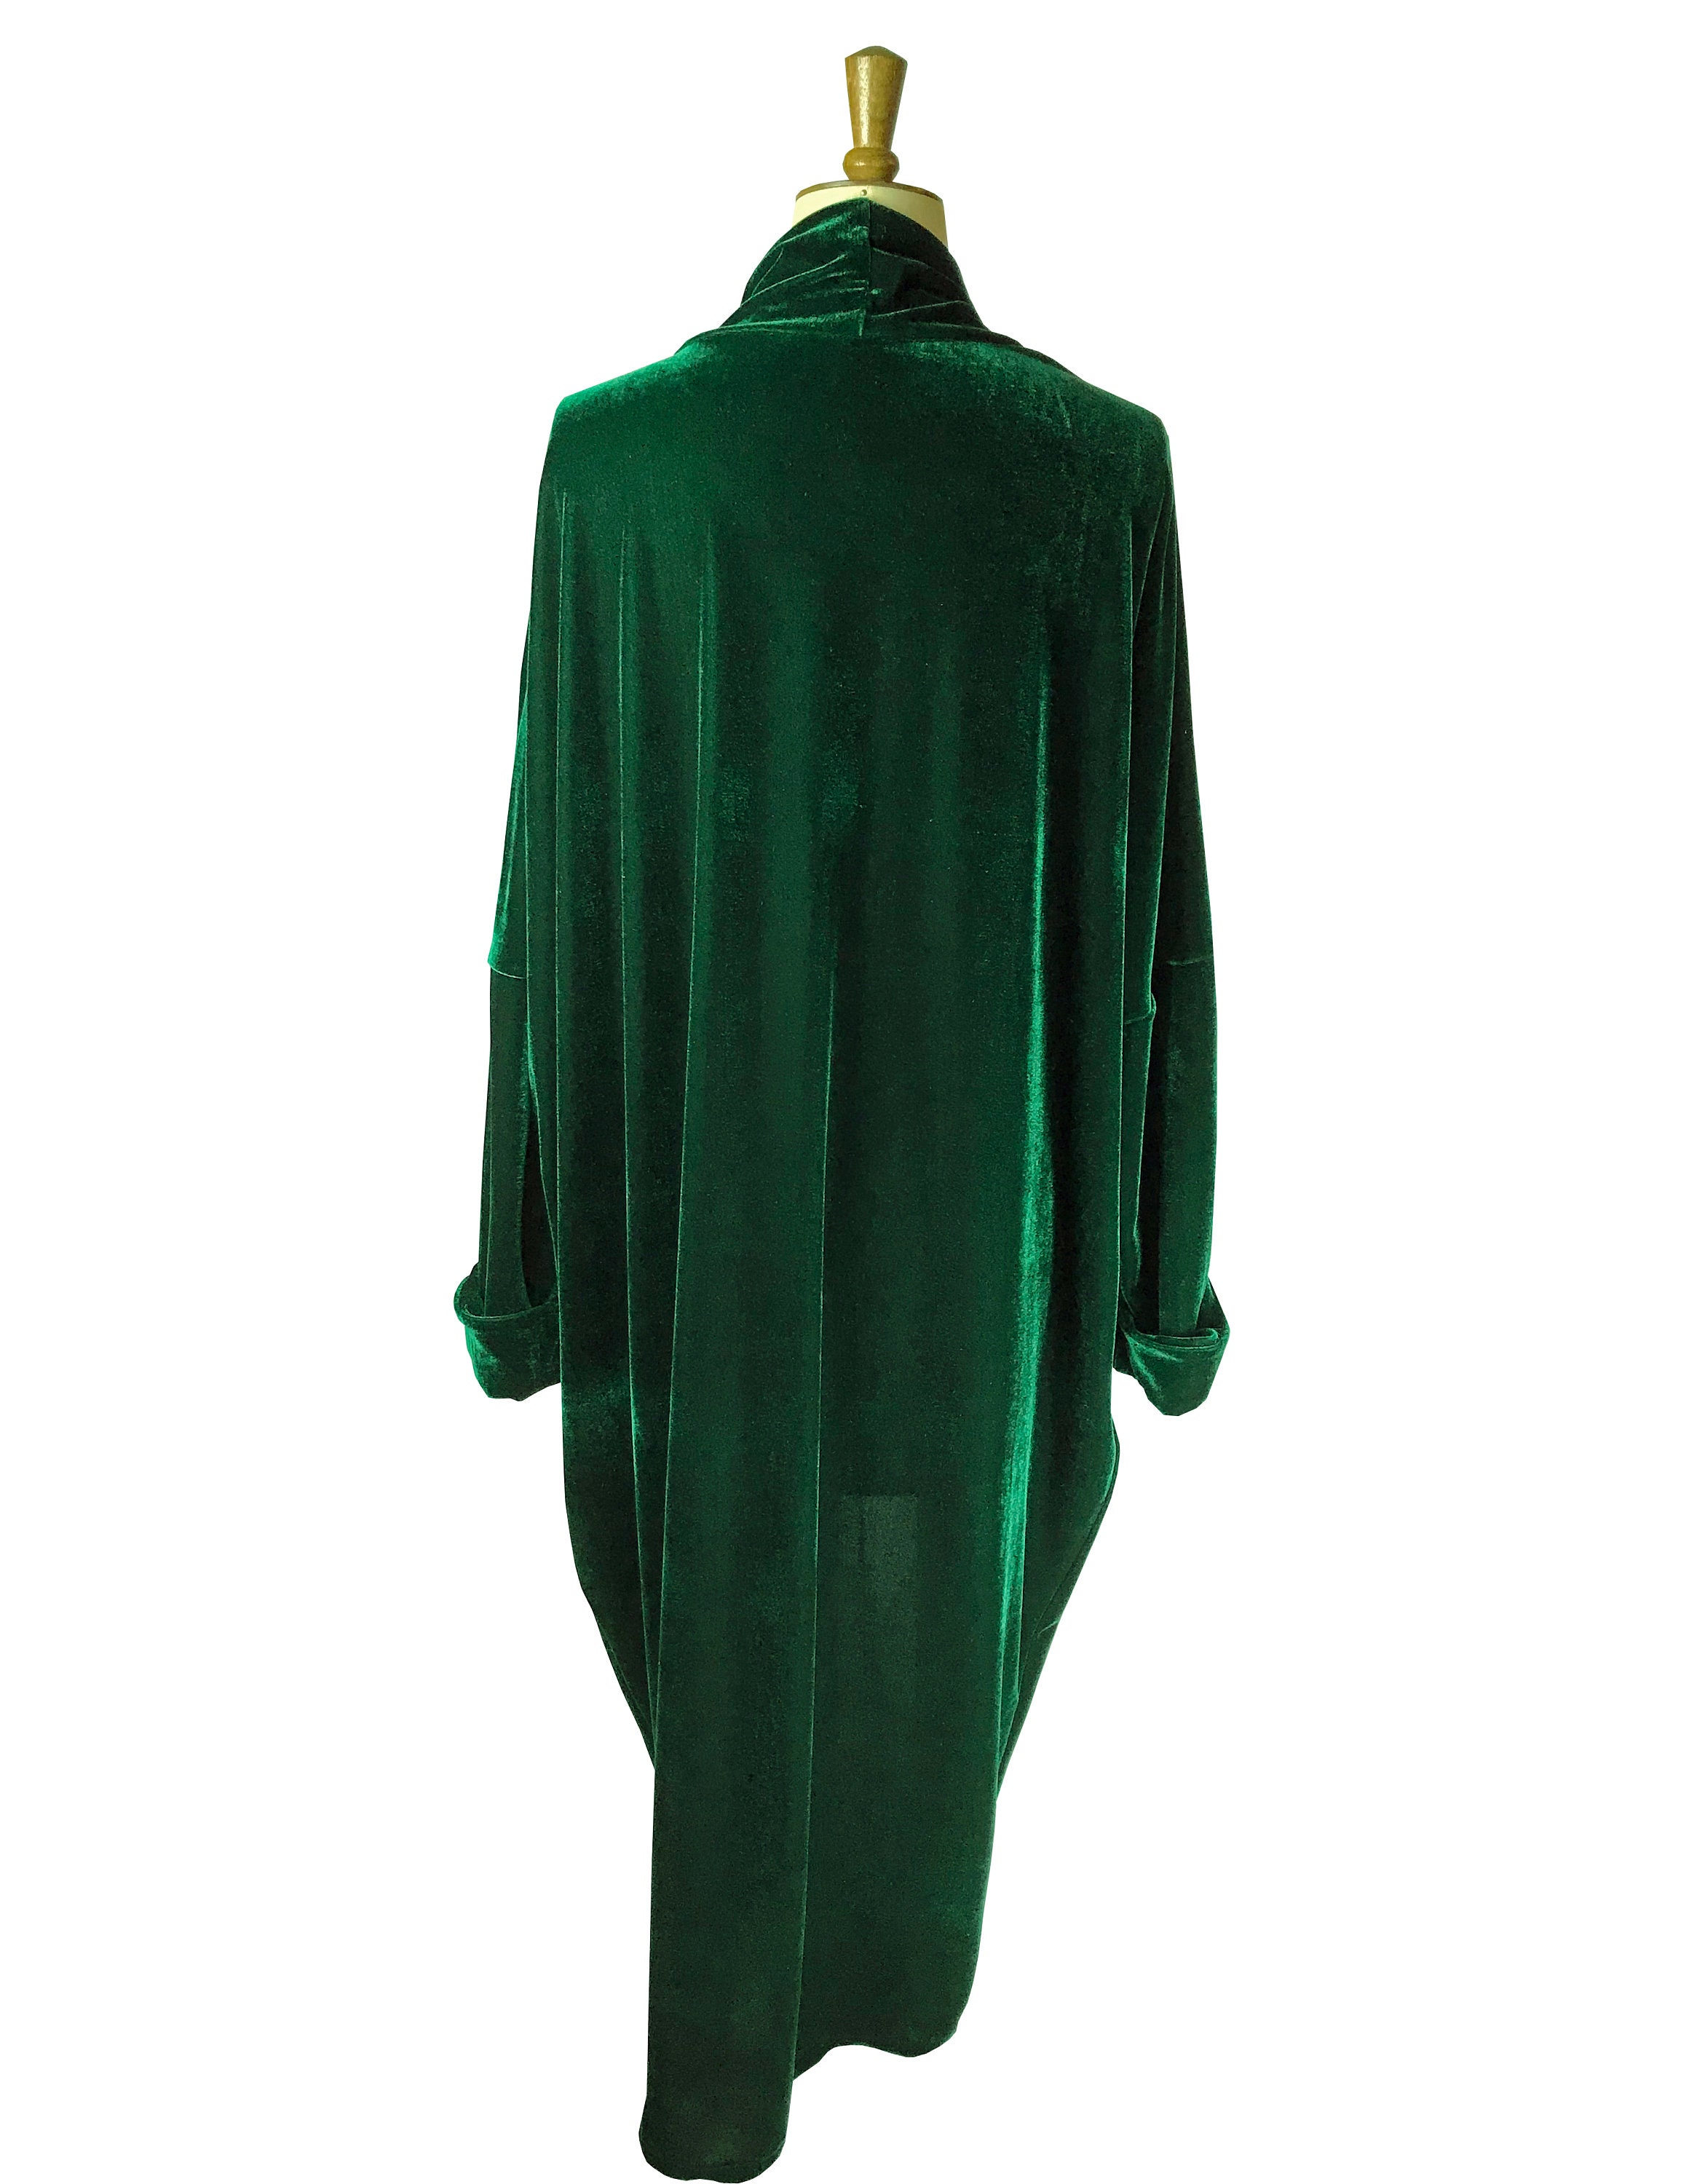 Baylis and Knight Green Velvet Opera Coat | Etsy UK